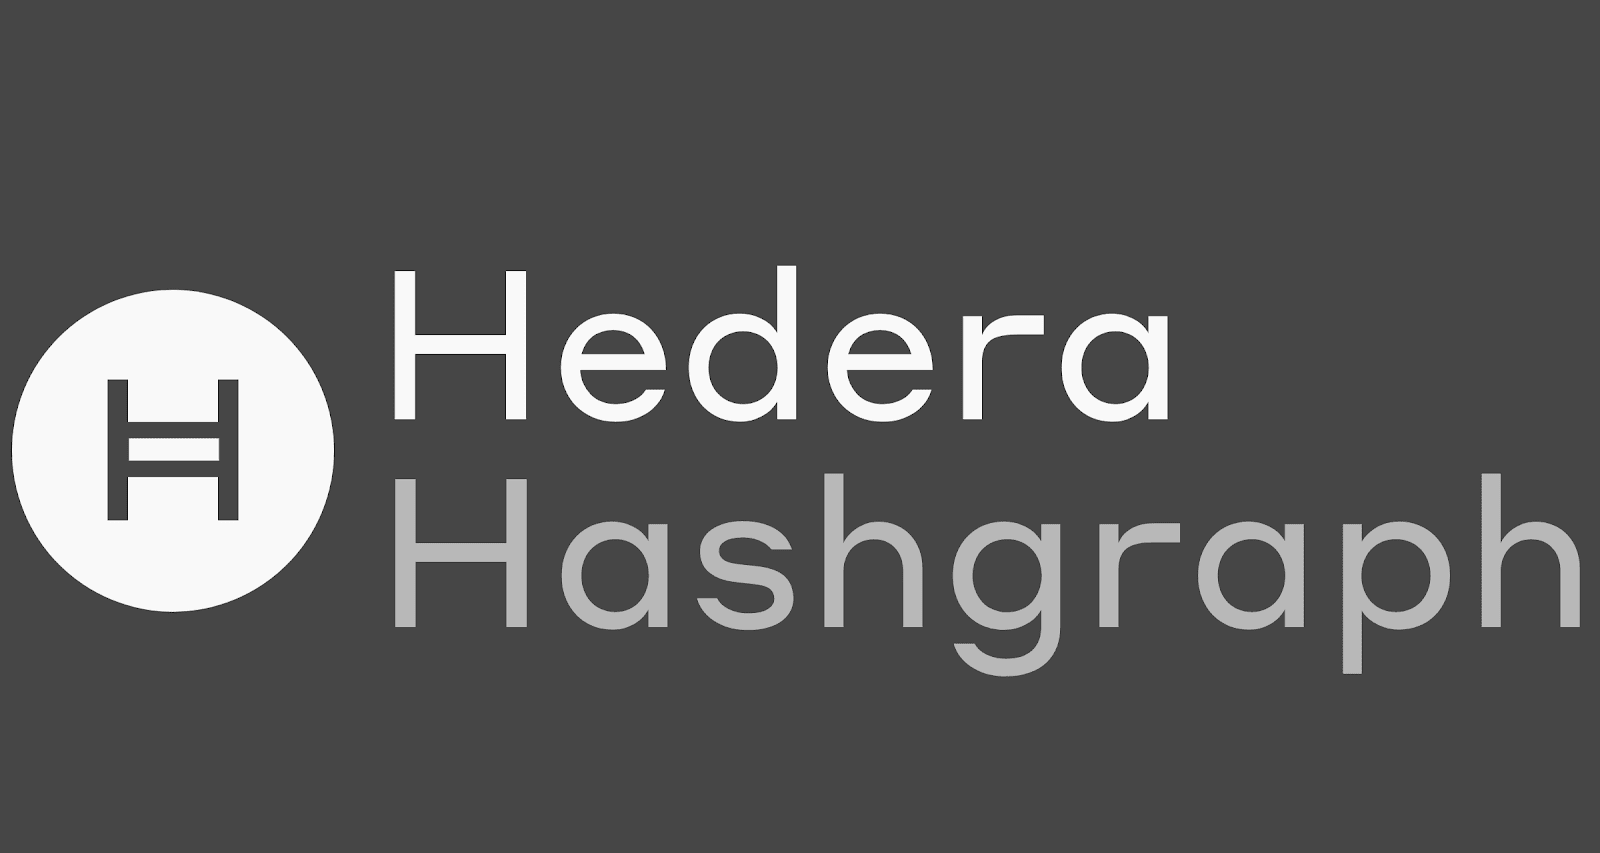 Libra: did Facebook copy Hedera Hashgraph’s ideas?